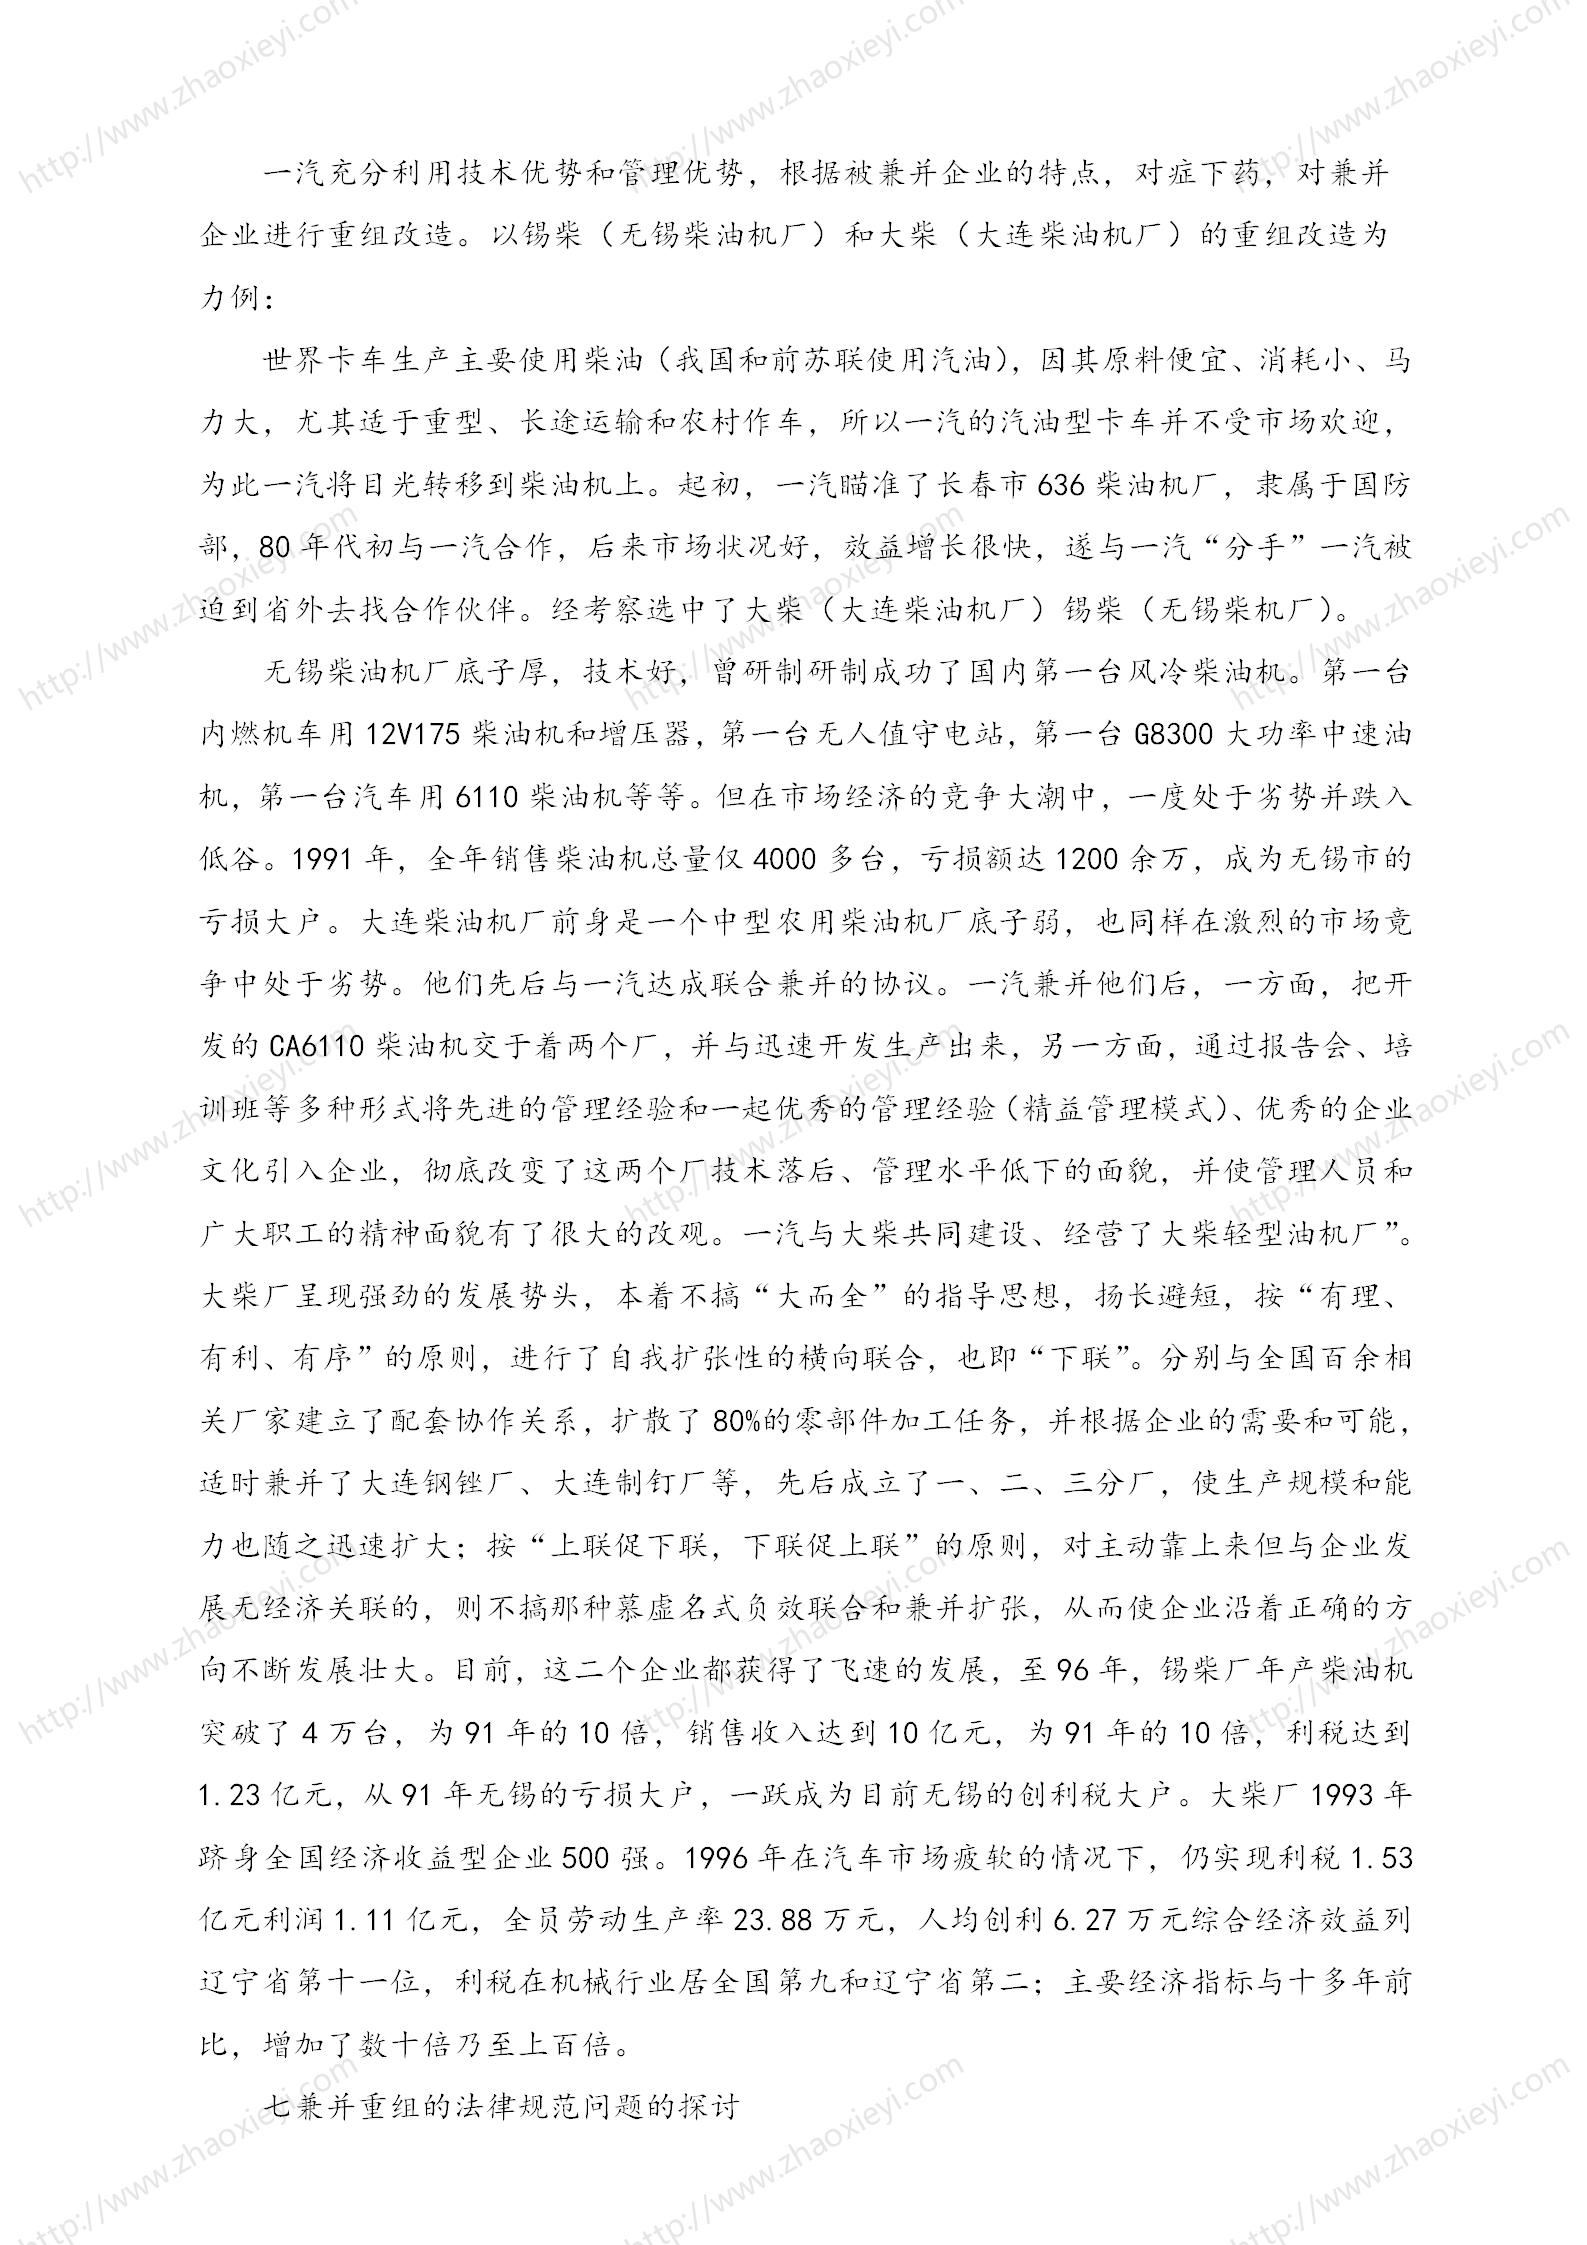 中国企业并购经典案例_179.jpg